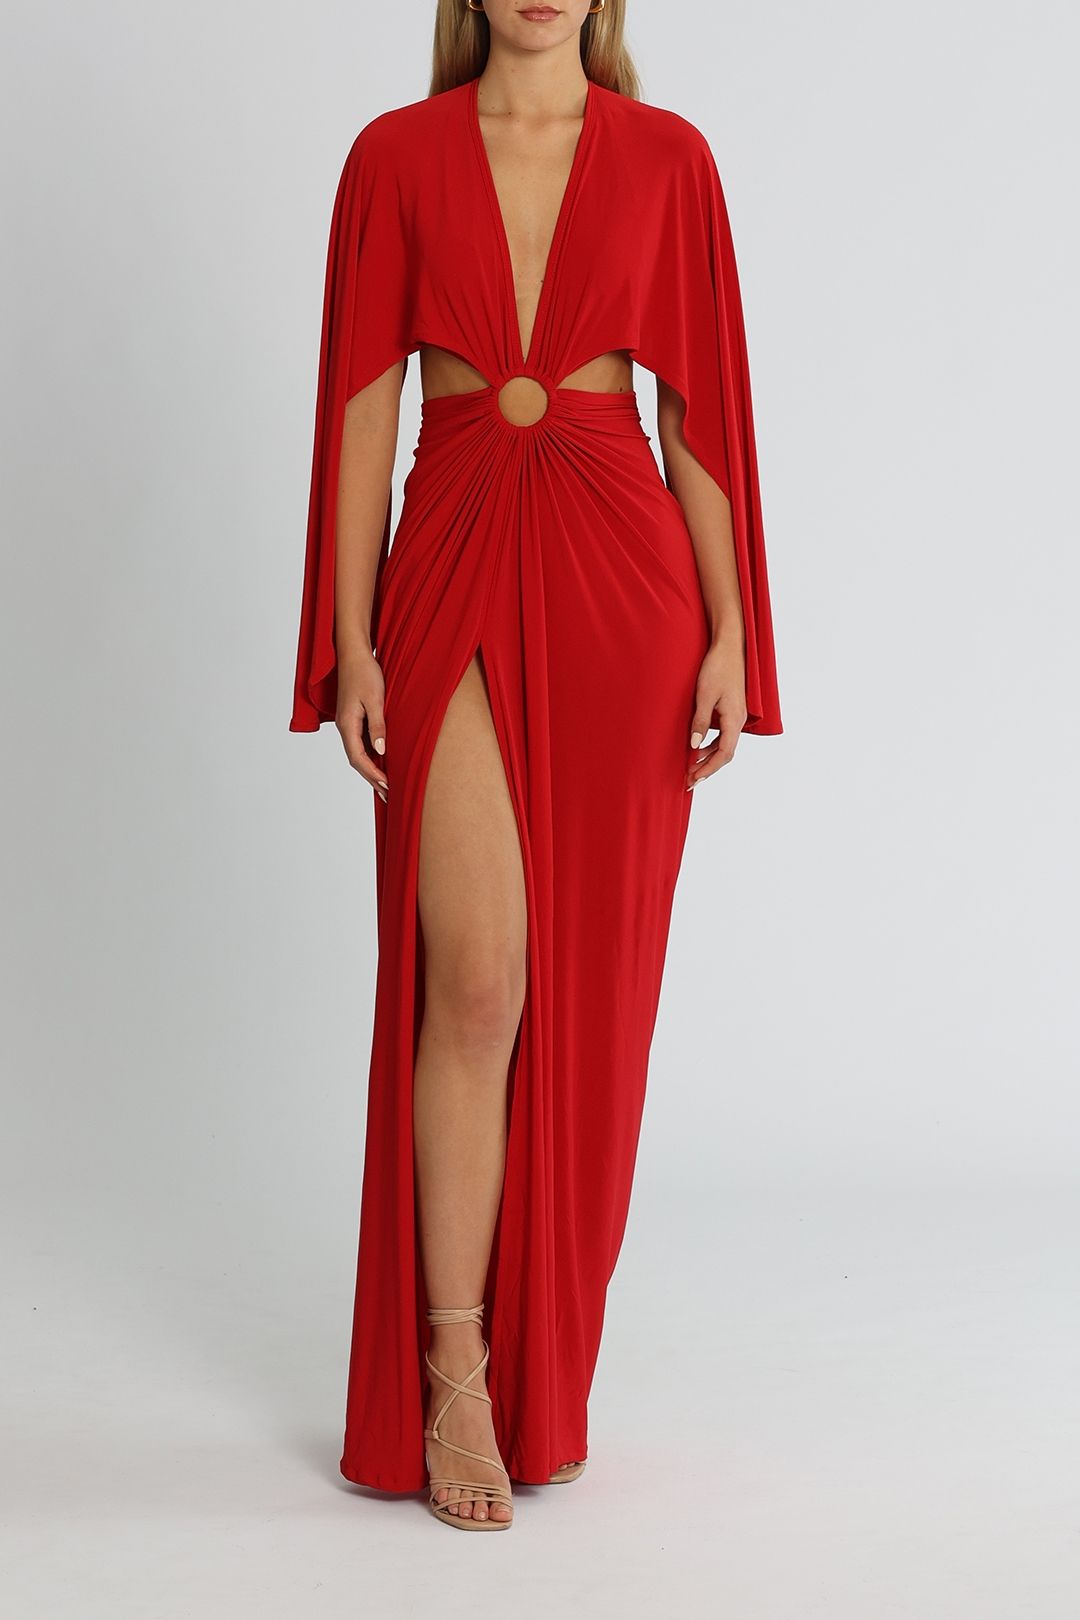 J. Angelique Selena Gown Red Floor Length